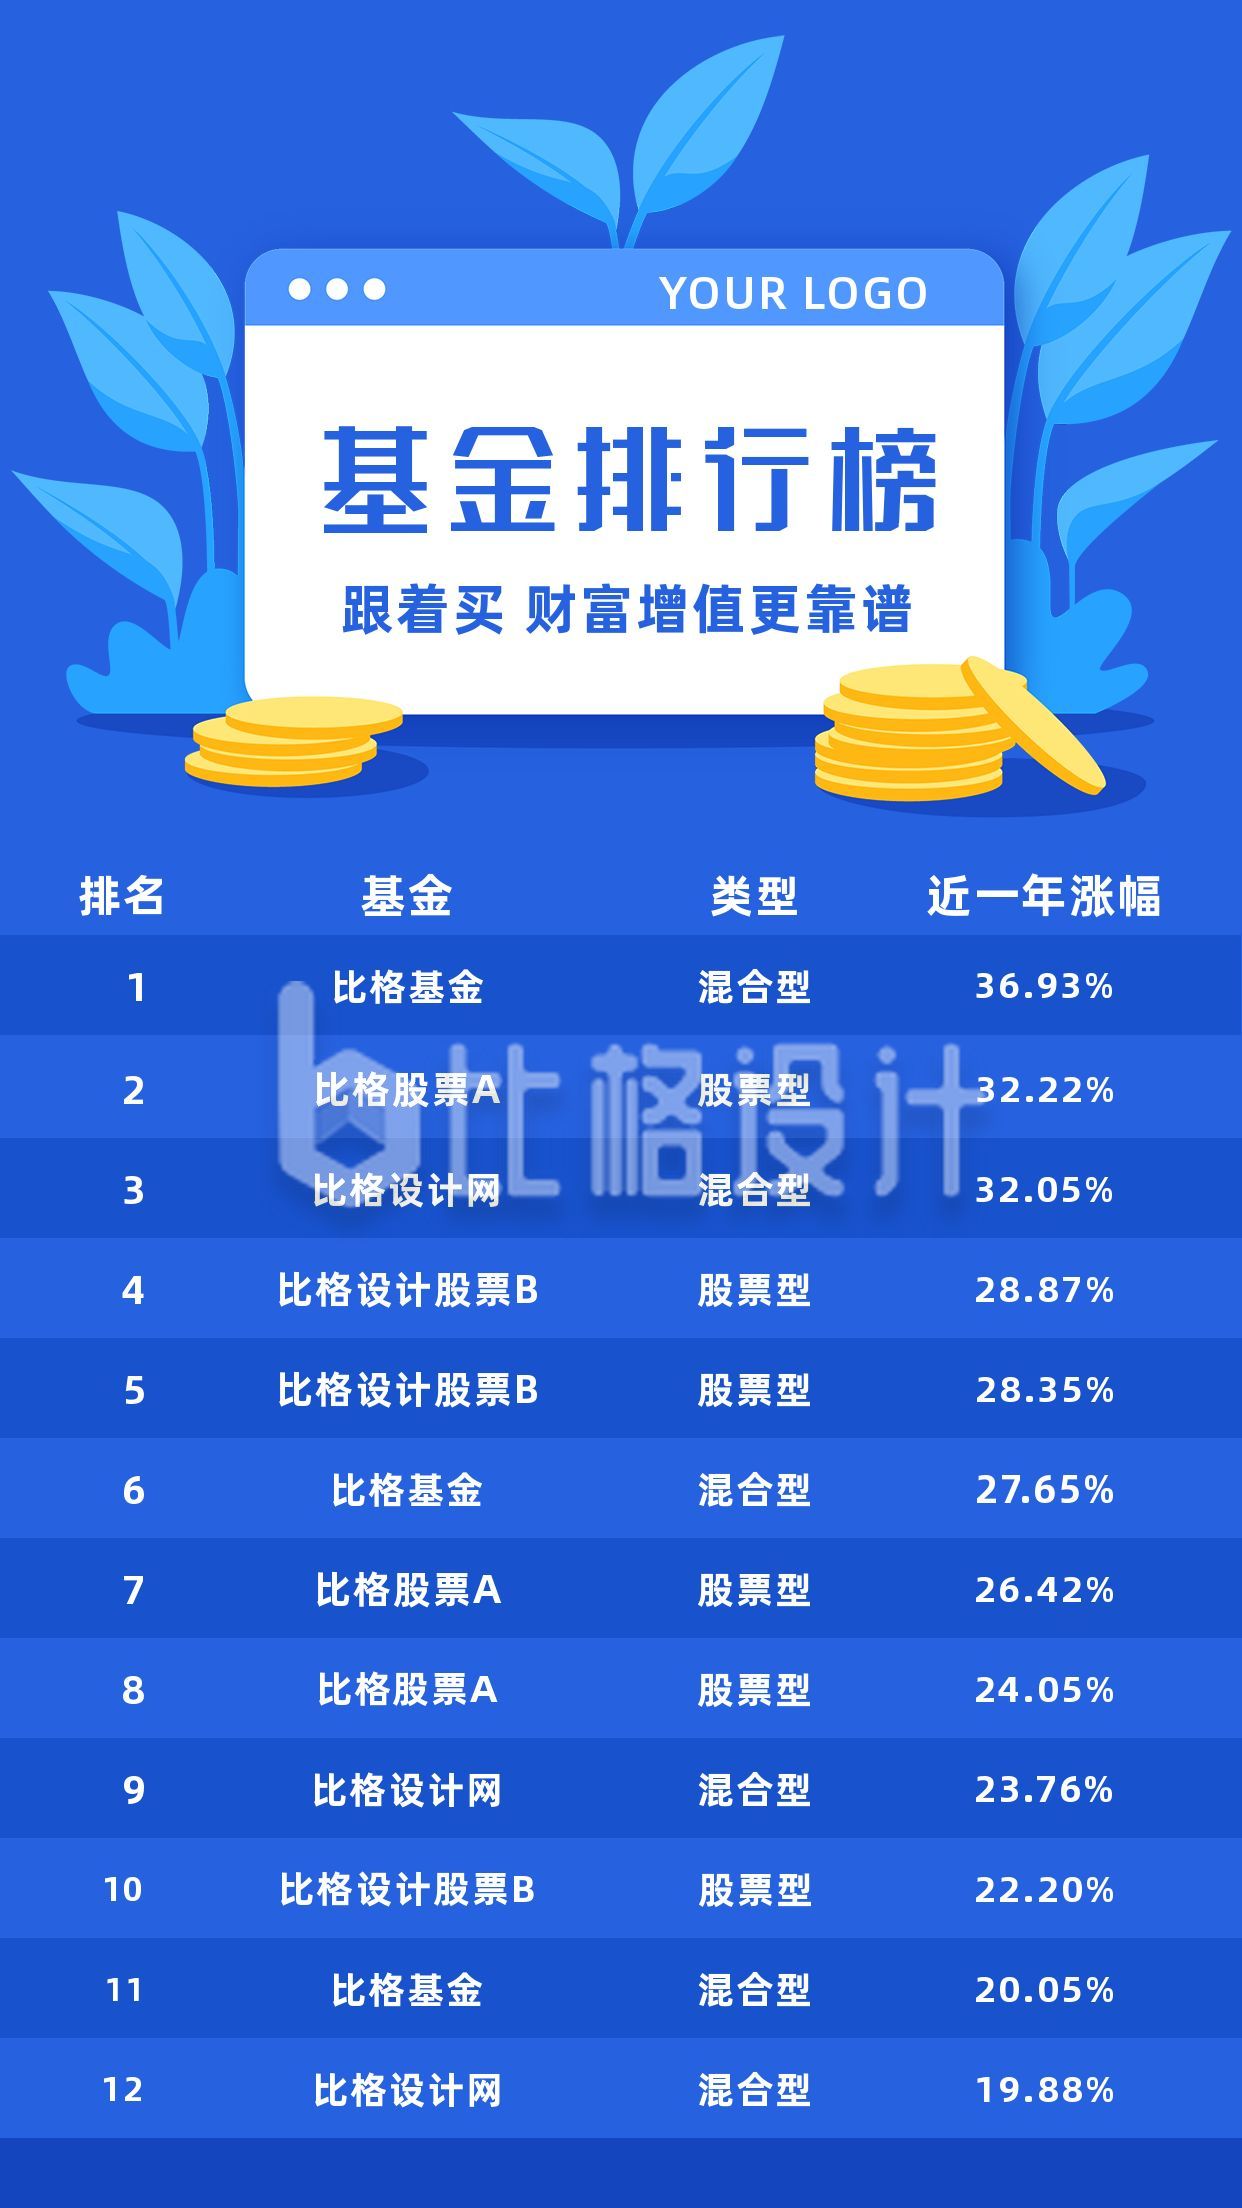 基金排行榜榜单投资理财蓝色商务通用手机海报